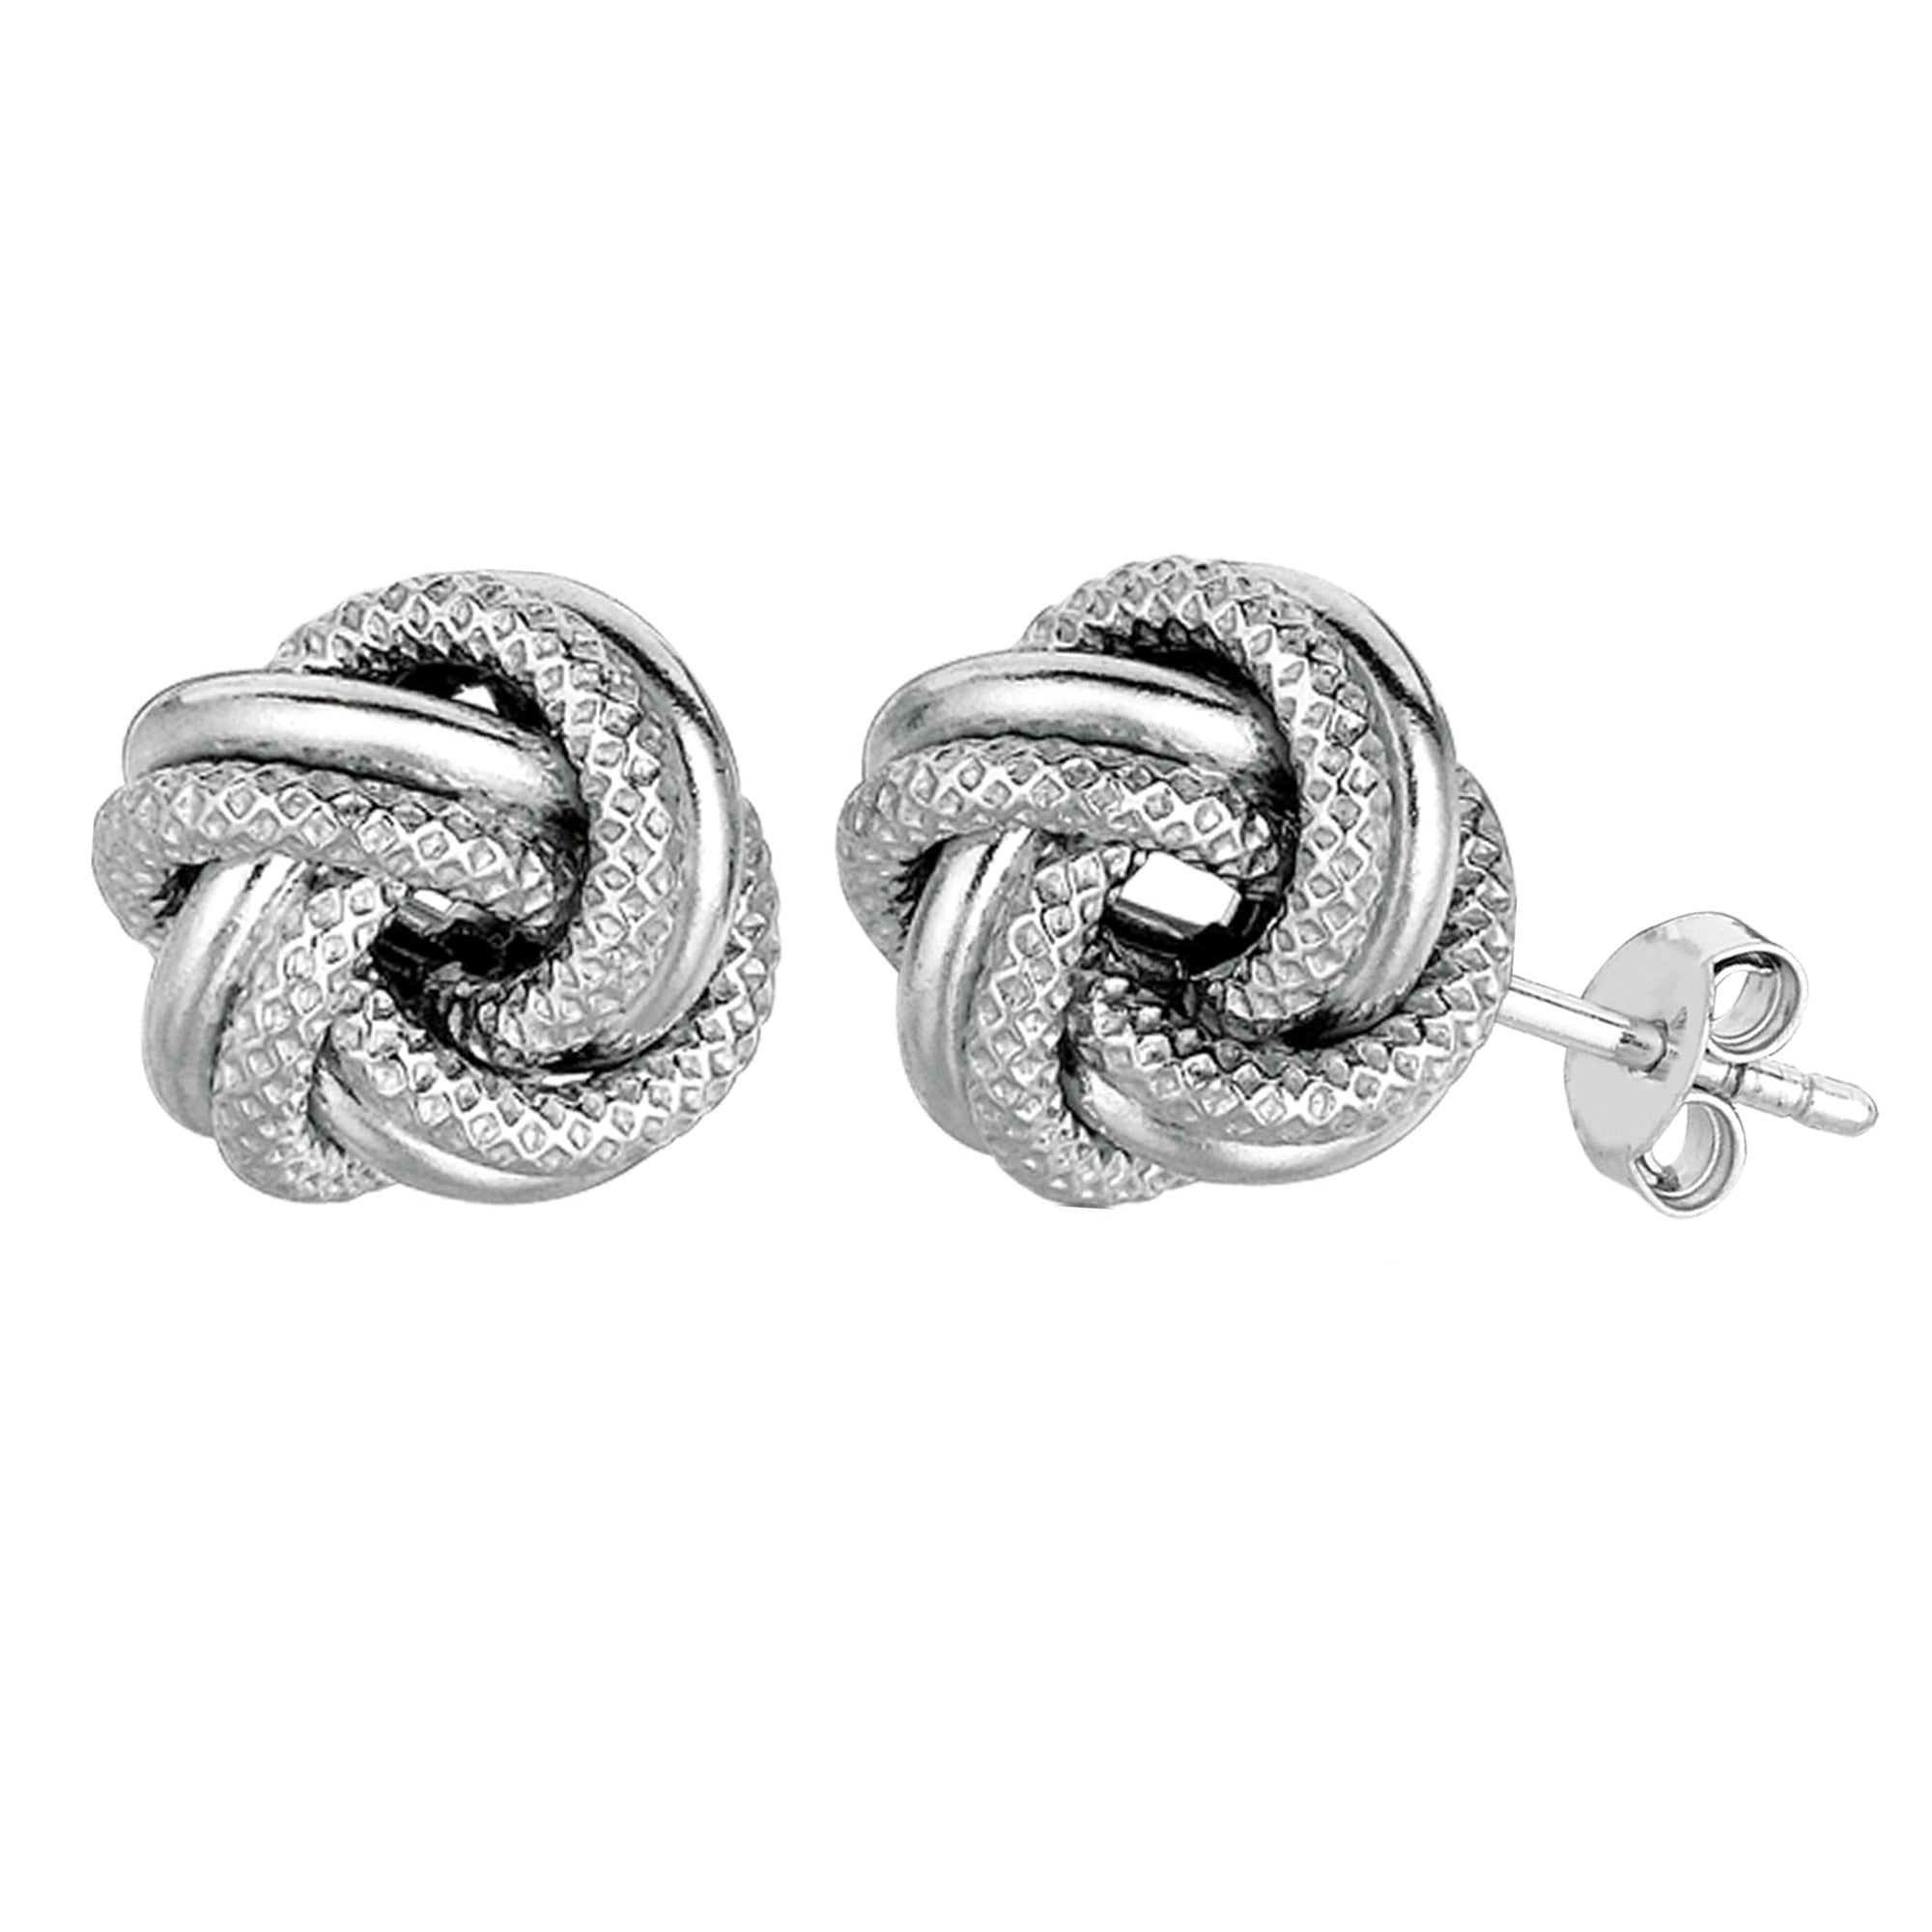 Sterling sølv Rhodium Finish 7 mm skinnende og tekstureret kærlighedsknude ørestikker fine designer smykker til mænd og kvinder